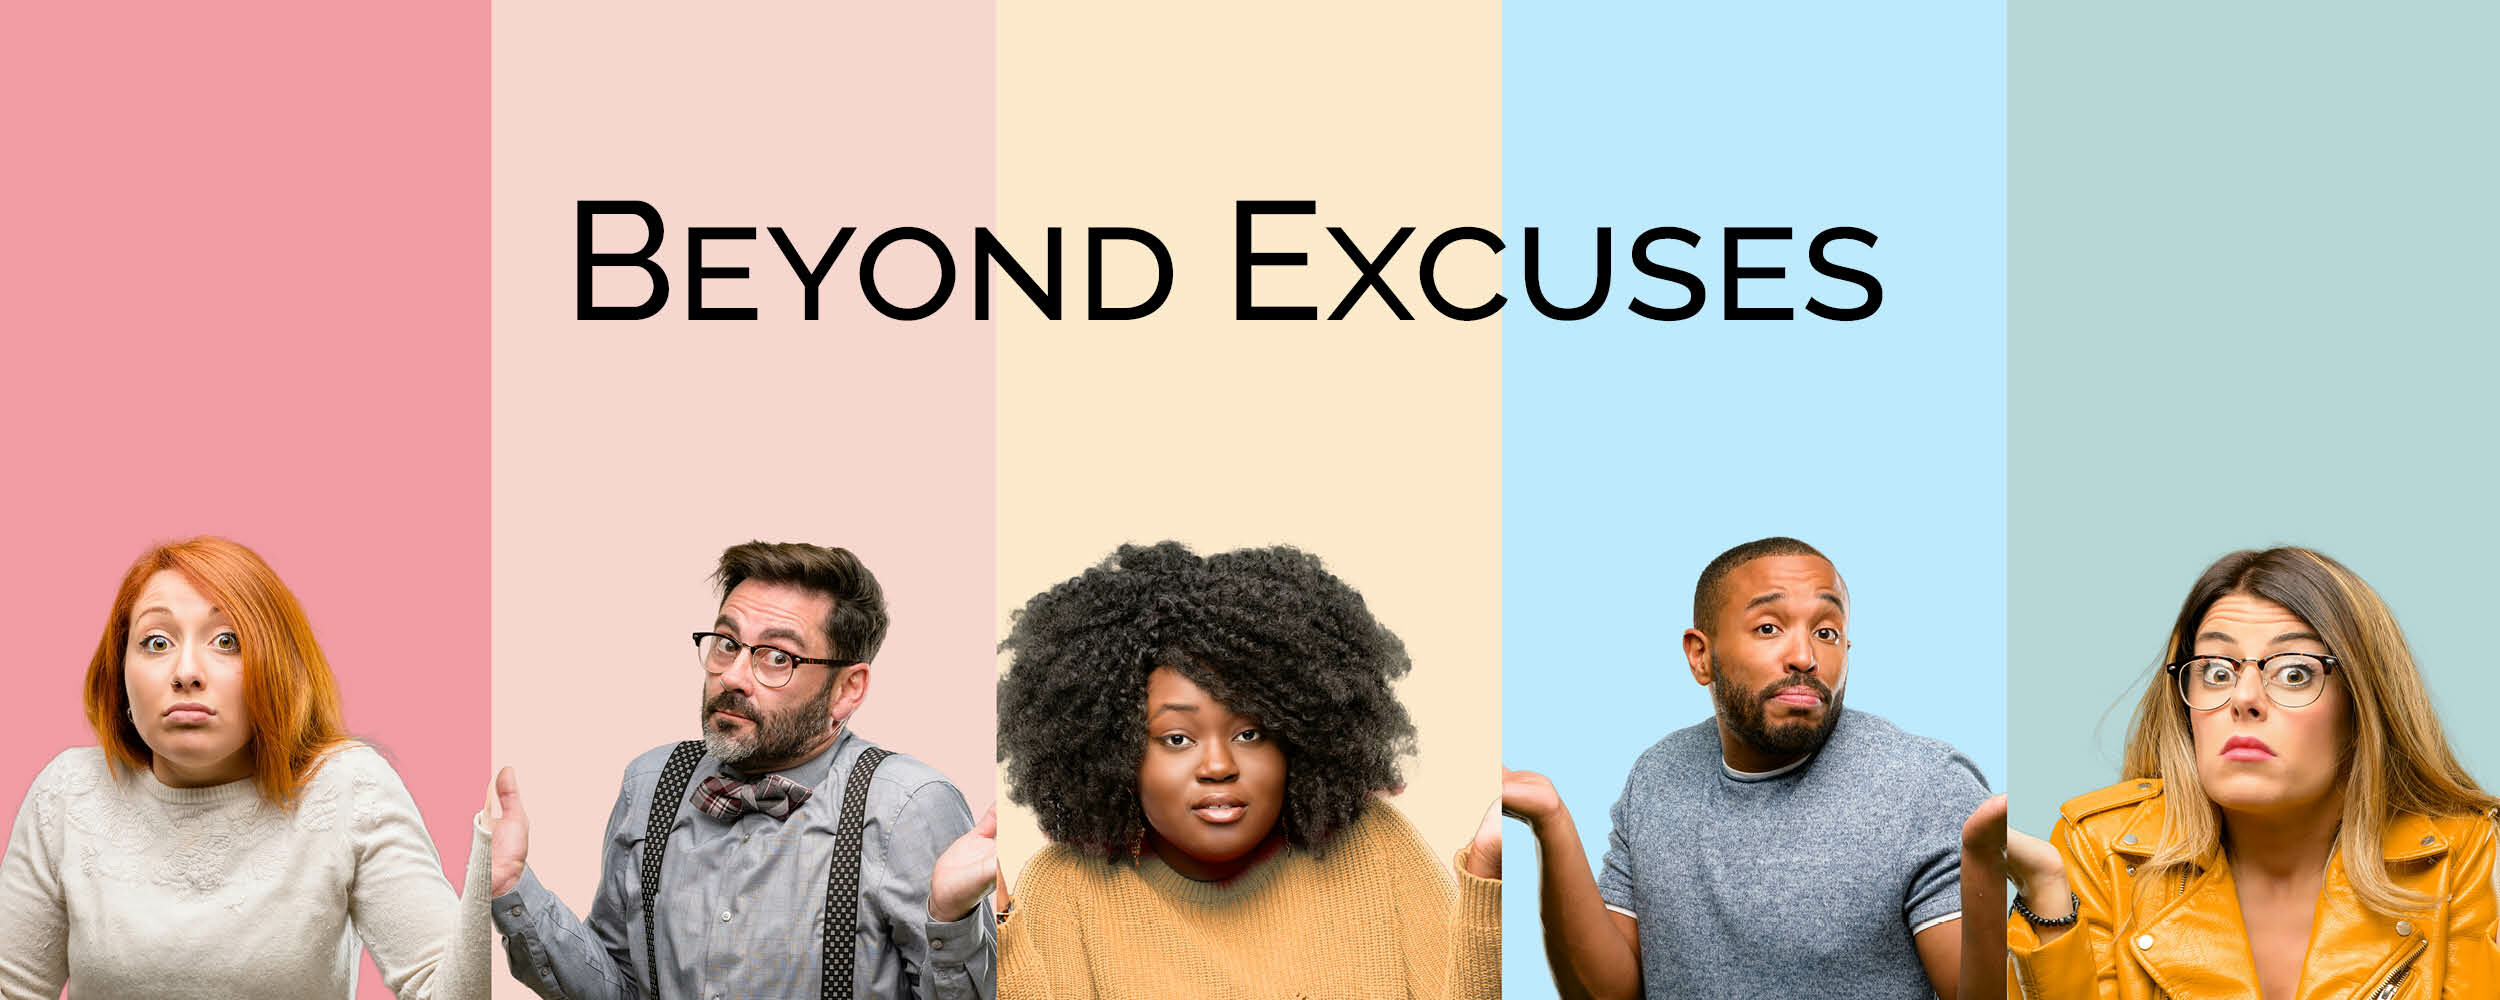 Beyond Excuses